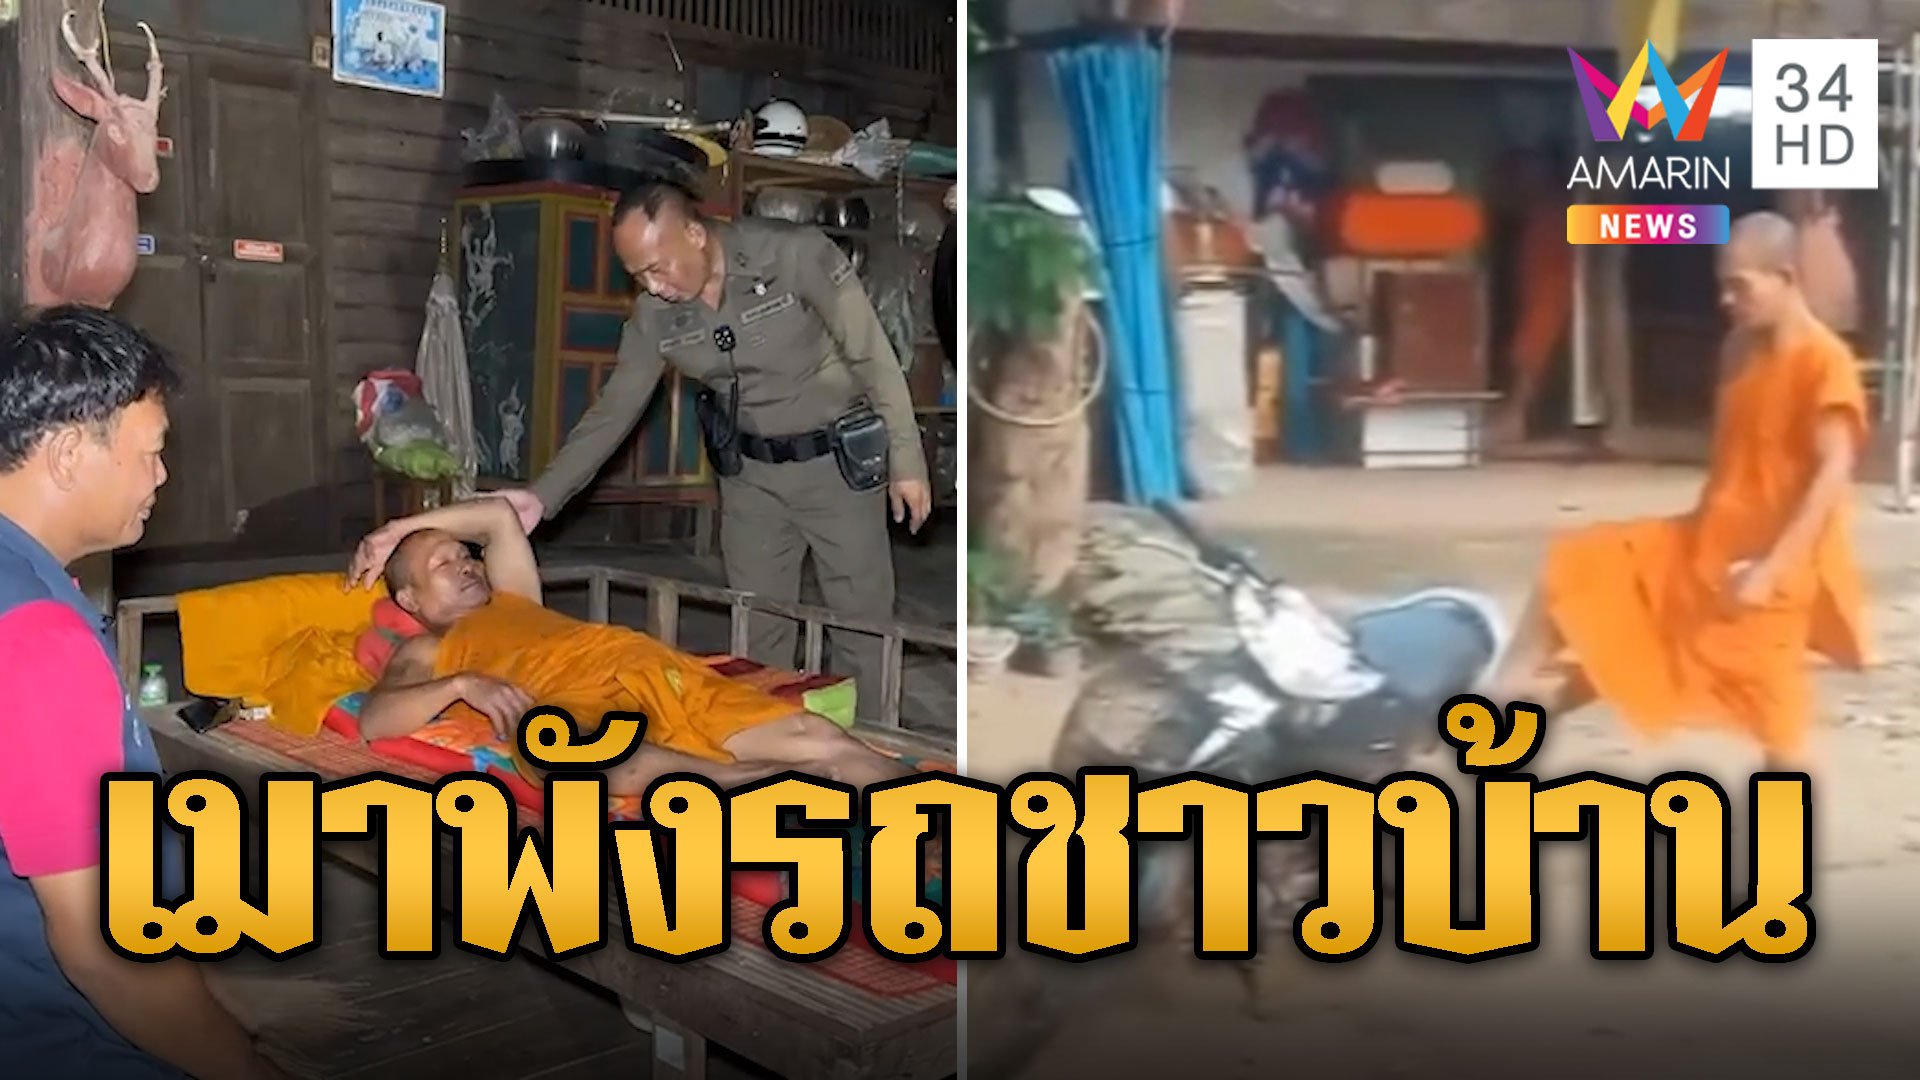 ผ้าเหลืองเสื่อม! เจ้าคณะตำบลเมาพังรถชาวบ้าน  | ข่าวอรุณอมรินทร์ | 11 พ.ค. 67 | AMARIN TVHD34